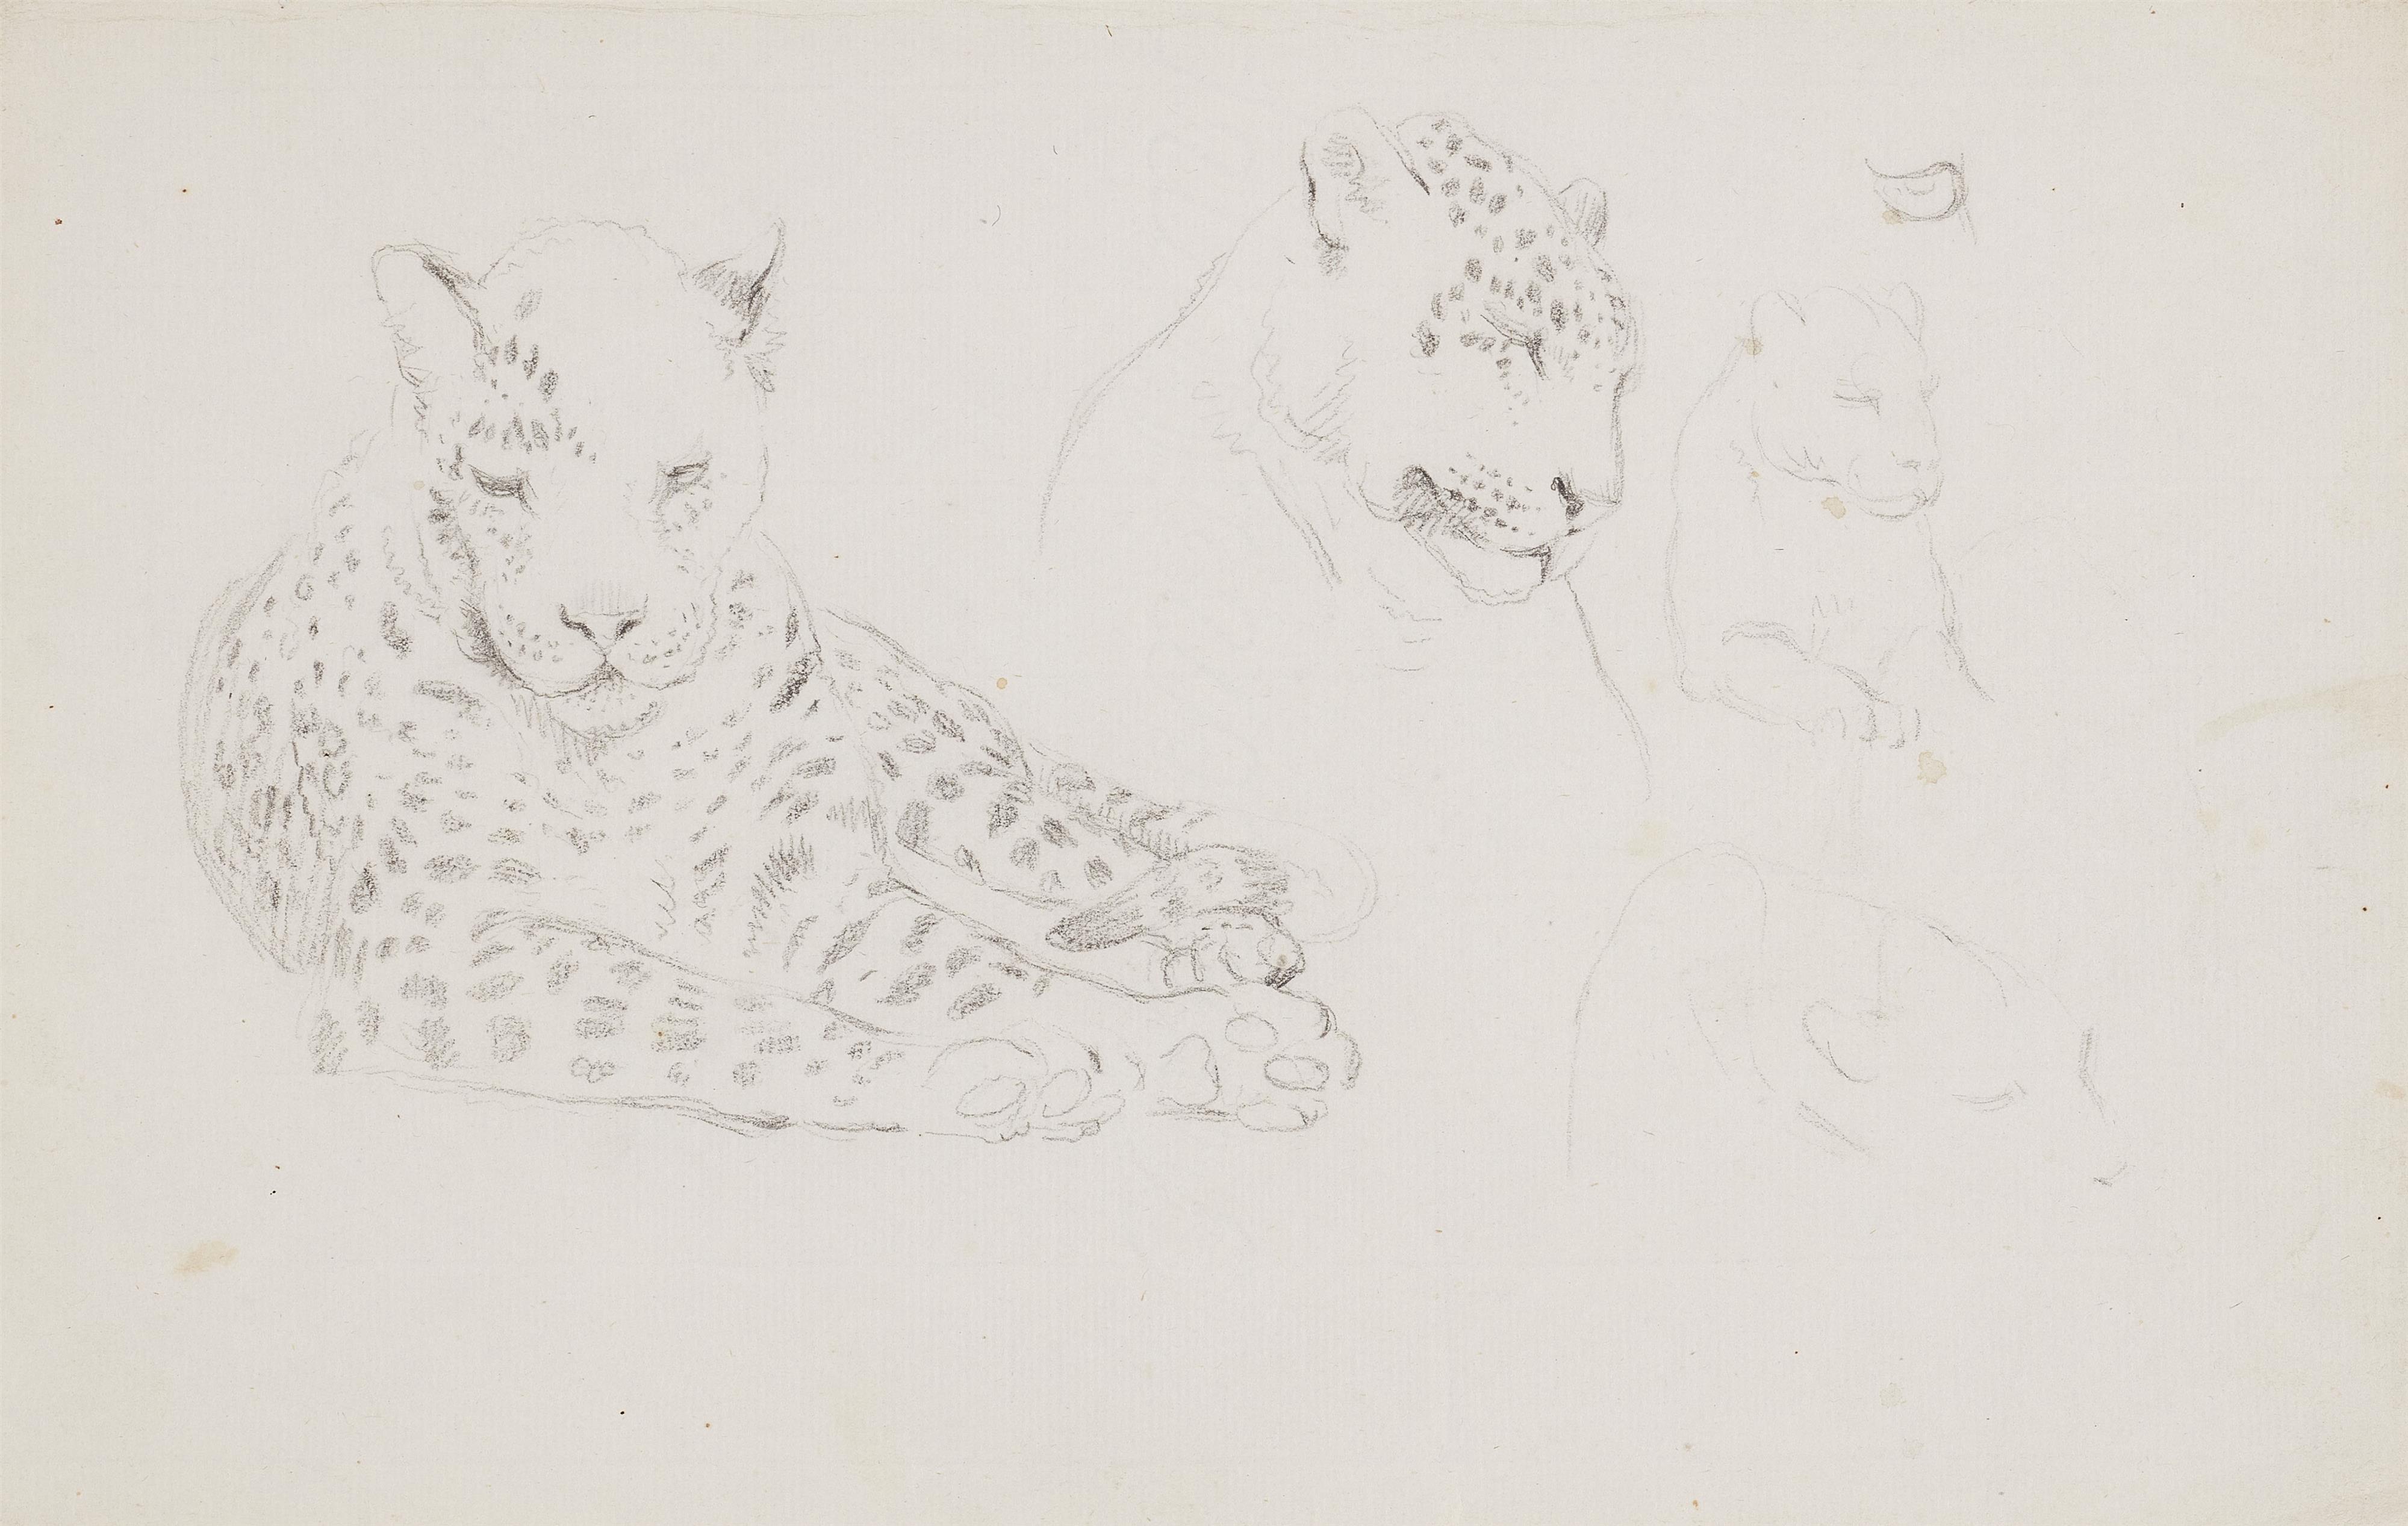 Johann Heinrich Wilhelm Tischbein - Drei Tierzeichnungen:
Studie zu einem Leoparden
Studie zu einer Hyäne
Schreitender Tiger - image-1